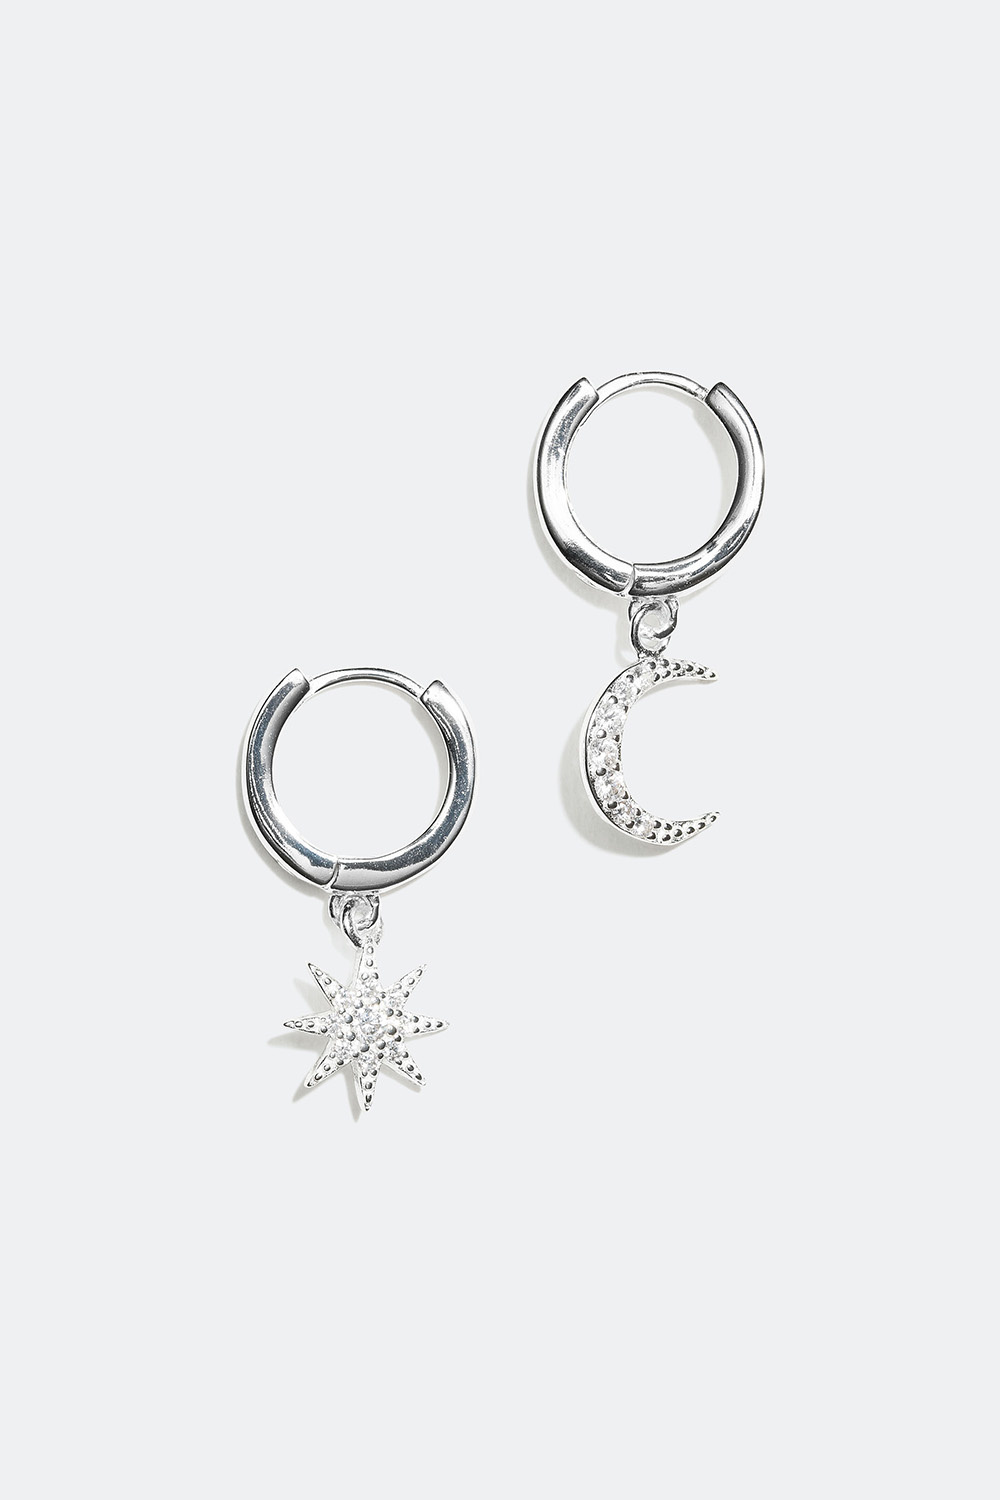 Øreringer i ekte sølv med anheng formet som måne og stjerne, ekte sølv, 1 cm